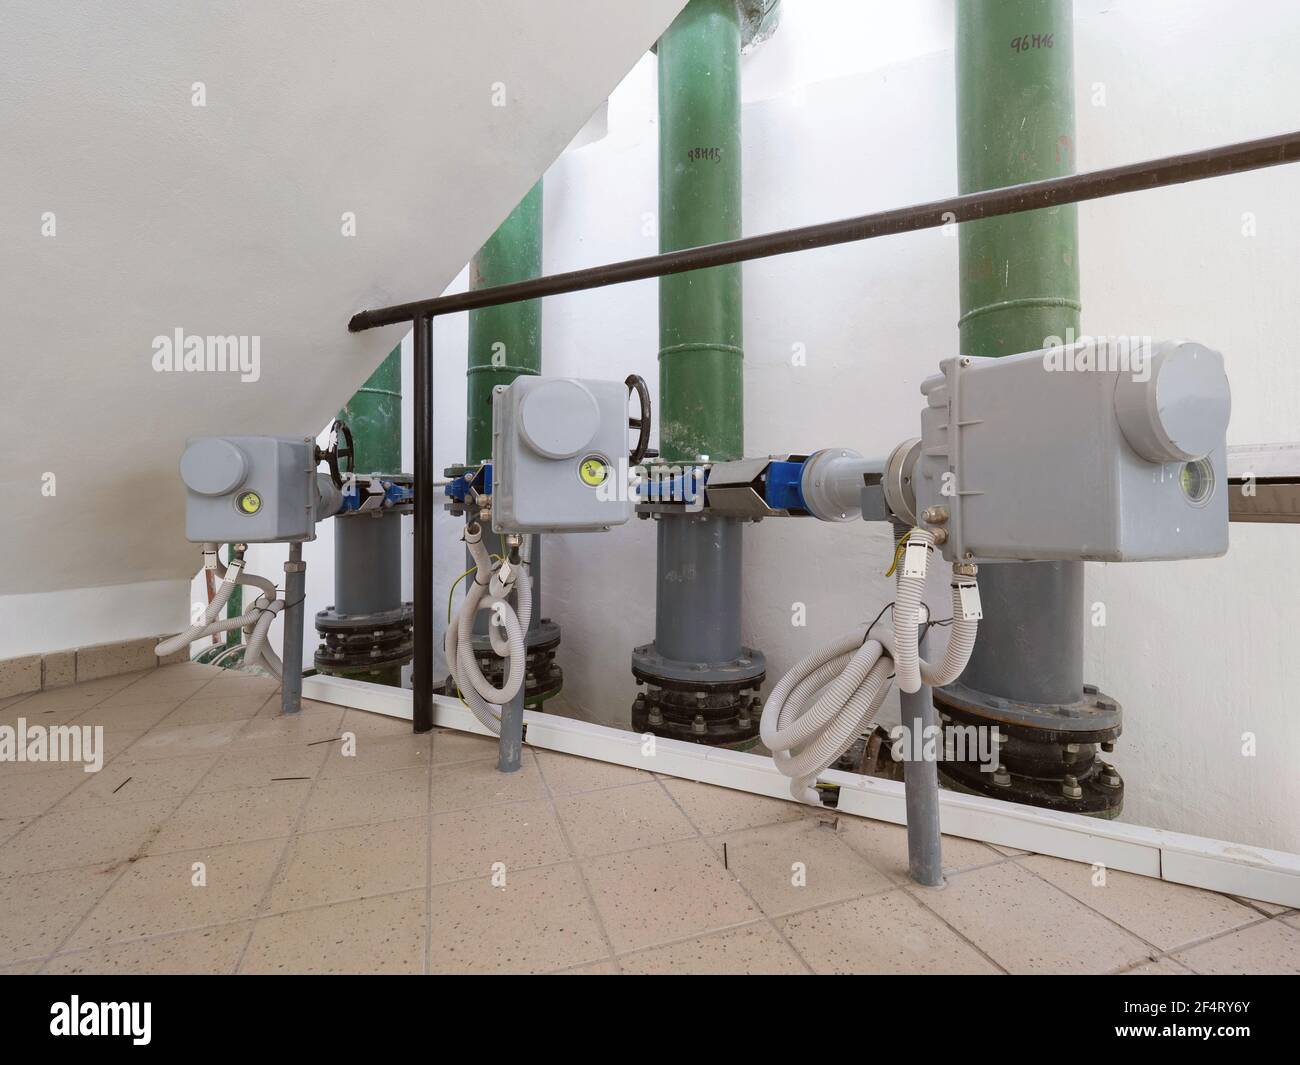 Station de pompage moderne avec tuyauterie verticale et moteurs avec servodriver sur les vannes contrôlées à distance depuis la salle de contrôle. Banque D'Images